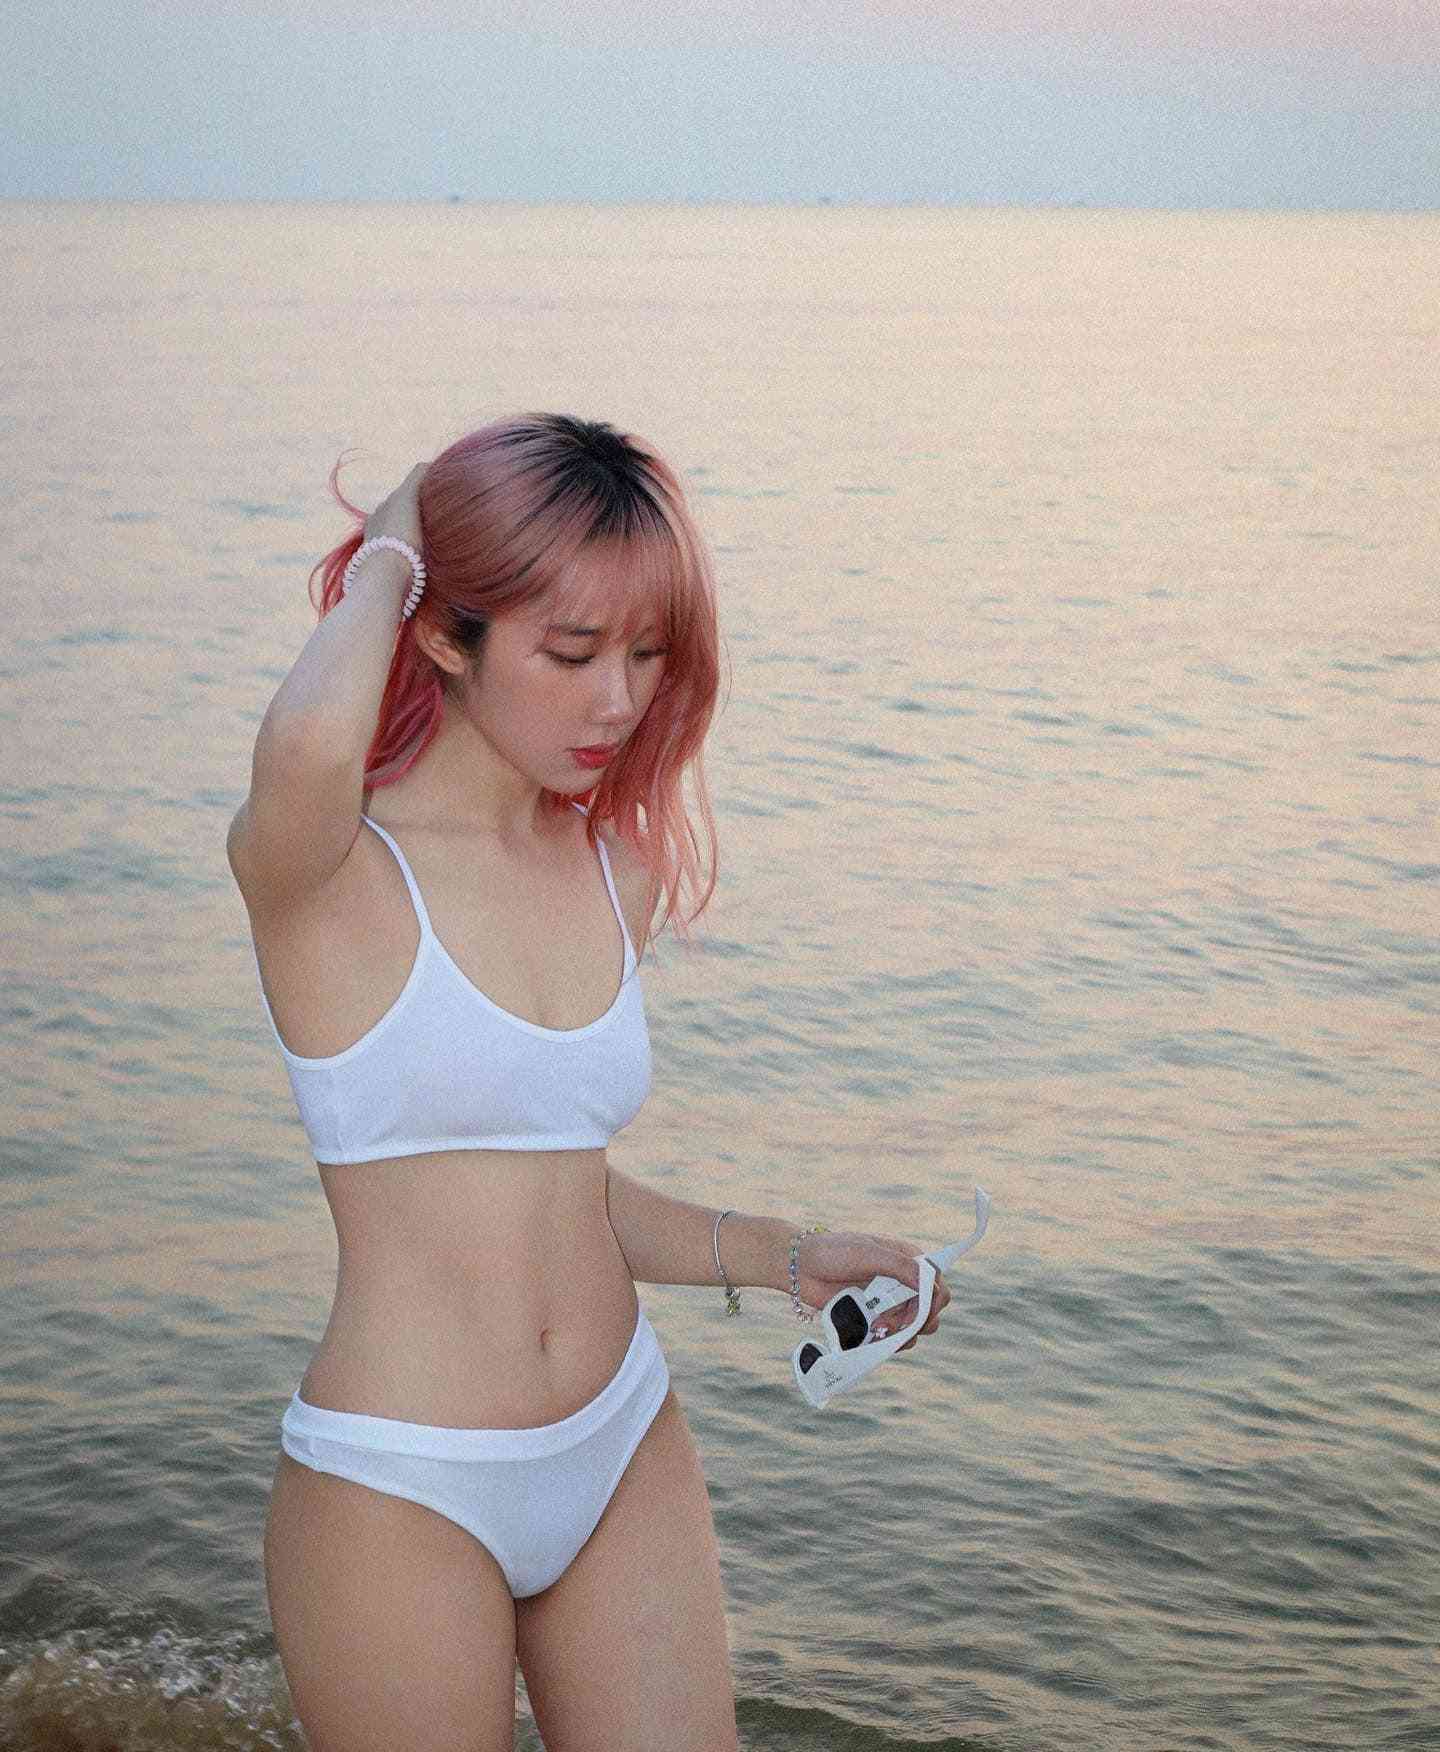 Mina Young khoe 3 vòng ‘bốc lửa’ trong bộ ảnh bikini làm rapper B Ray cũng phải ‘thả tim’